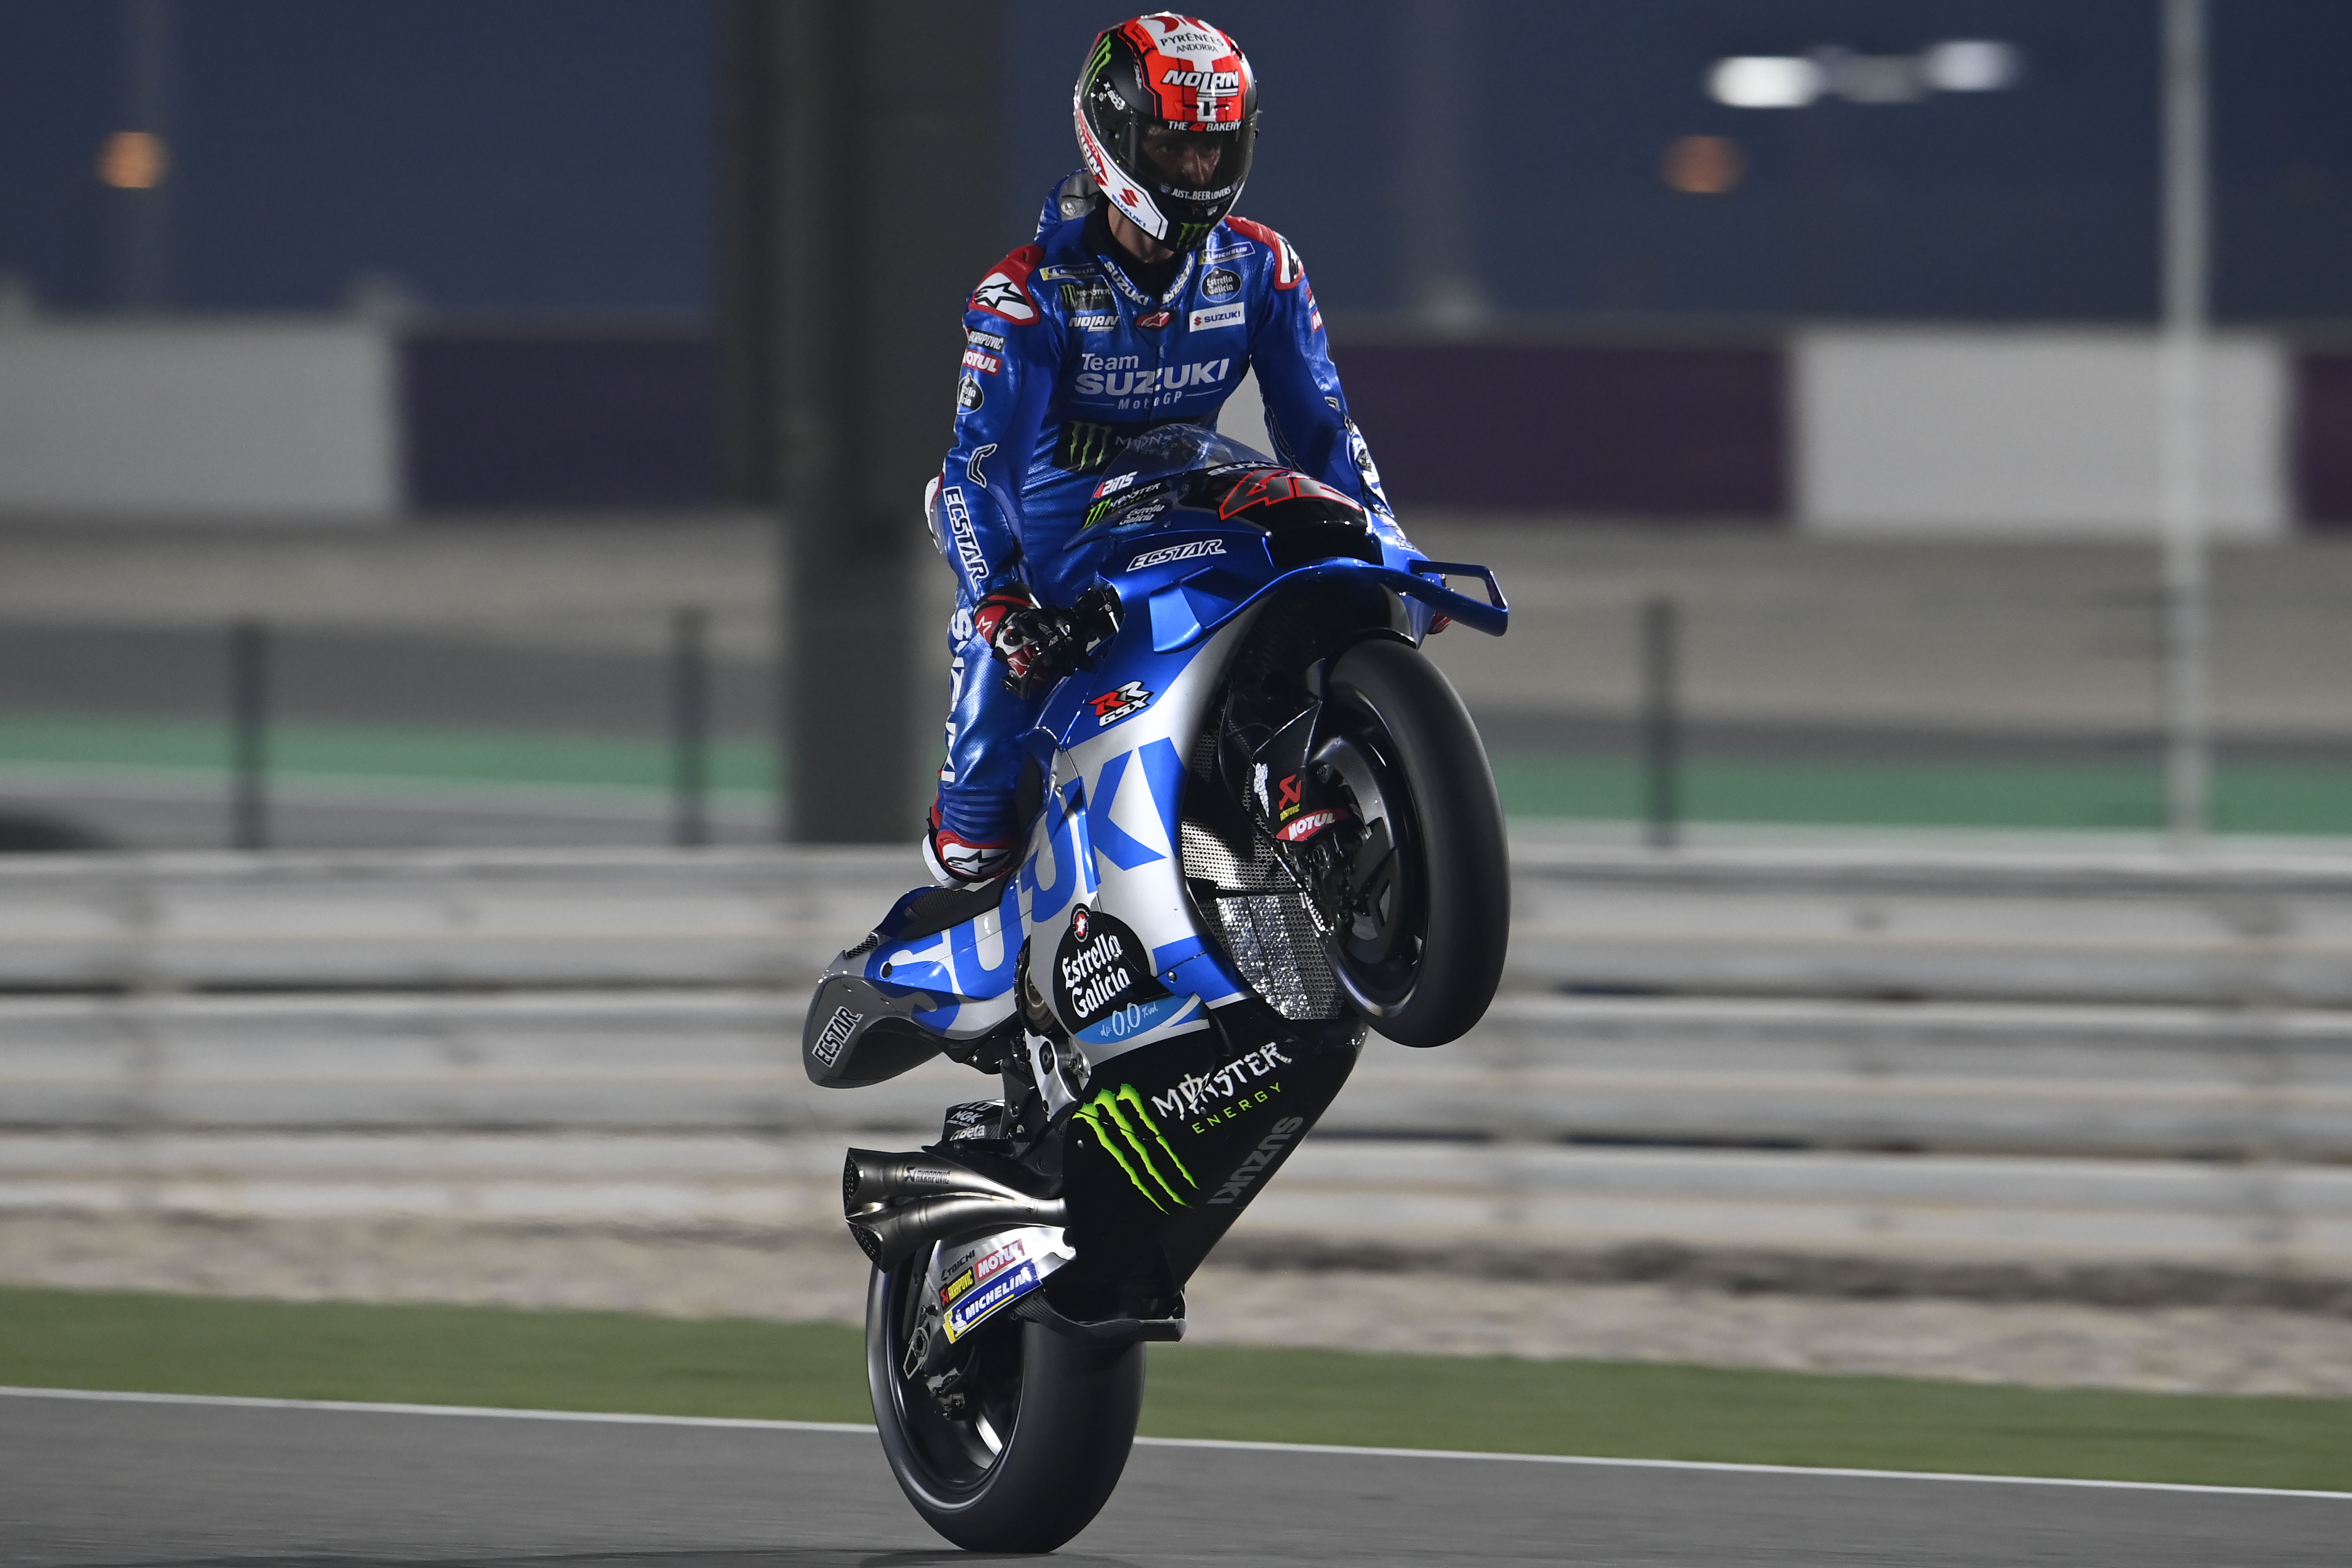 Suzuki, Honda usurp 2021 pacesetters in Qatar MotoGP practice